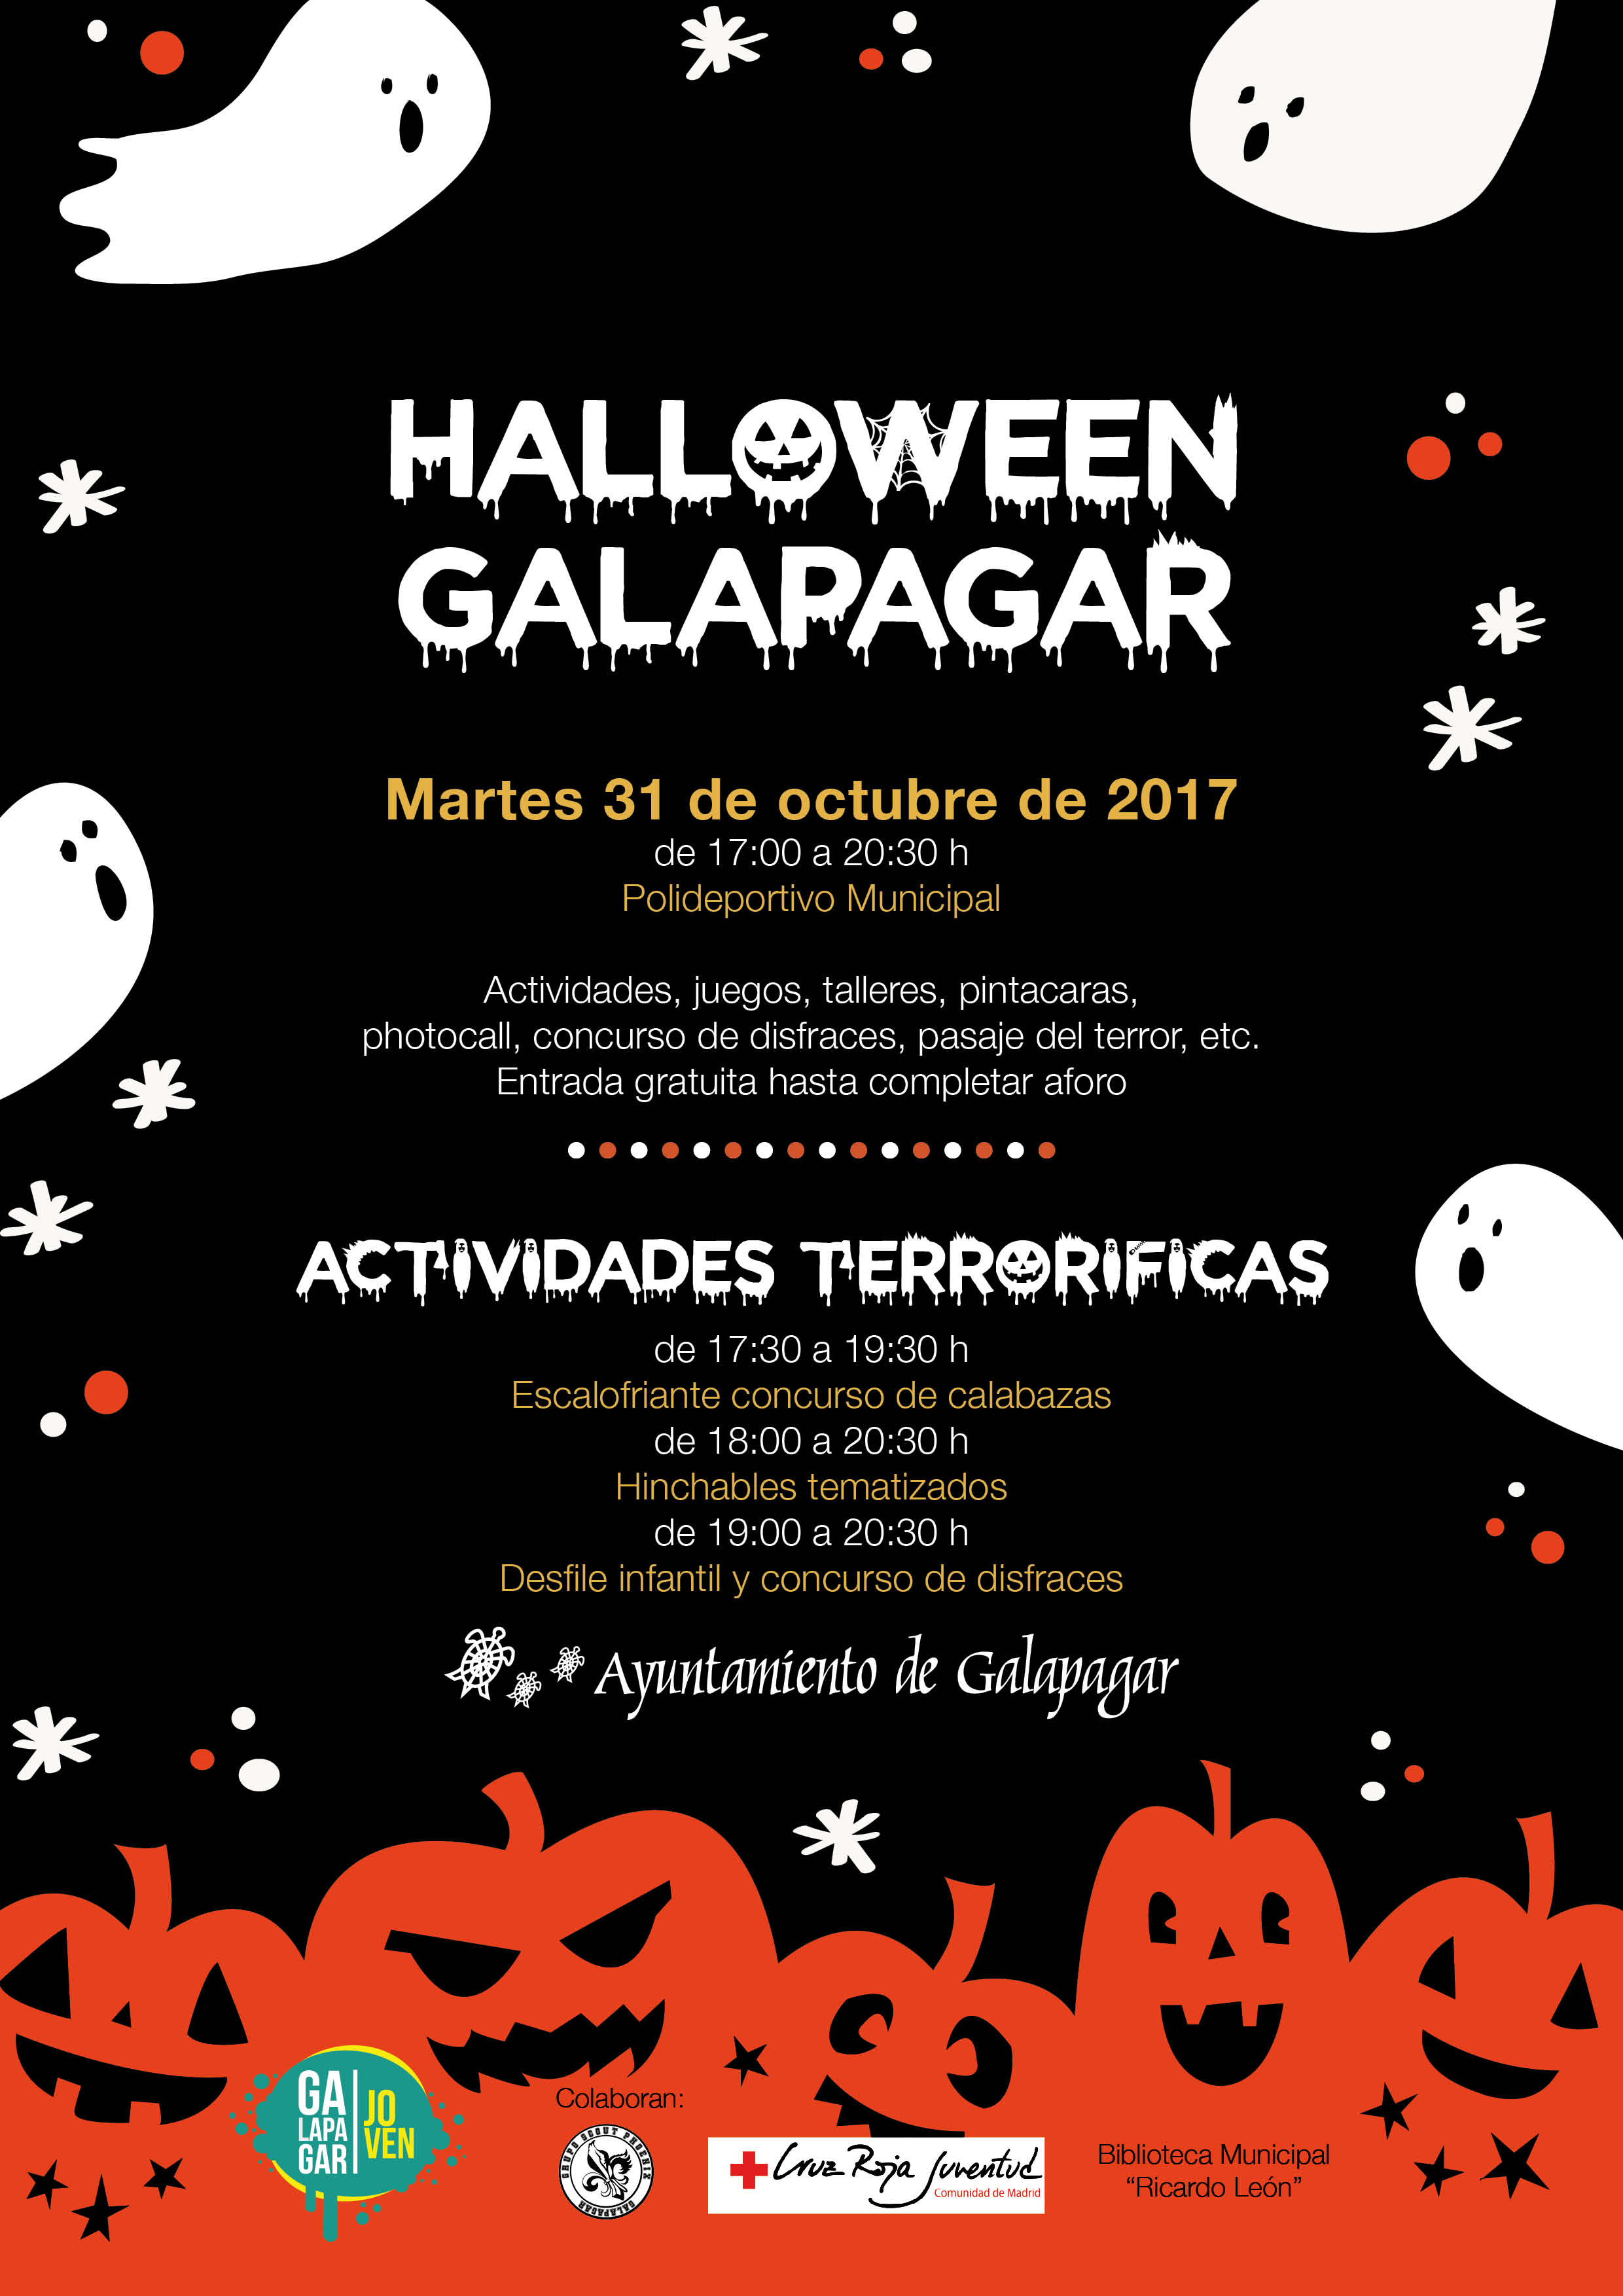 HalloweenGalapagar_2017